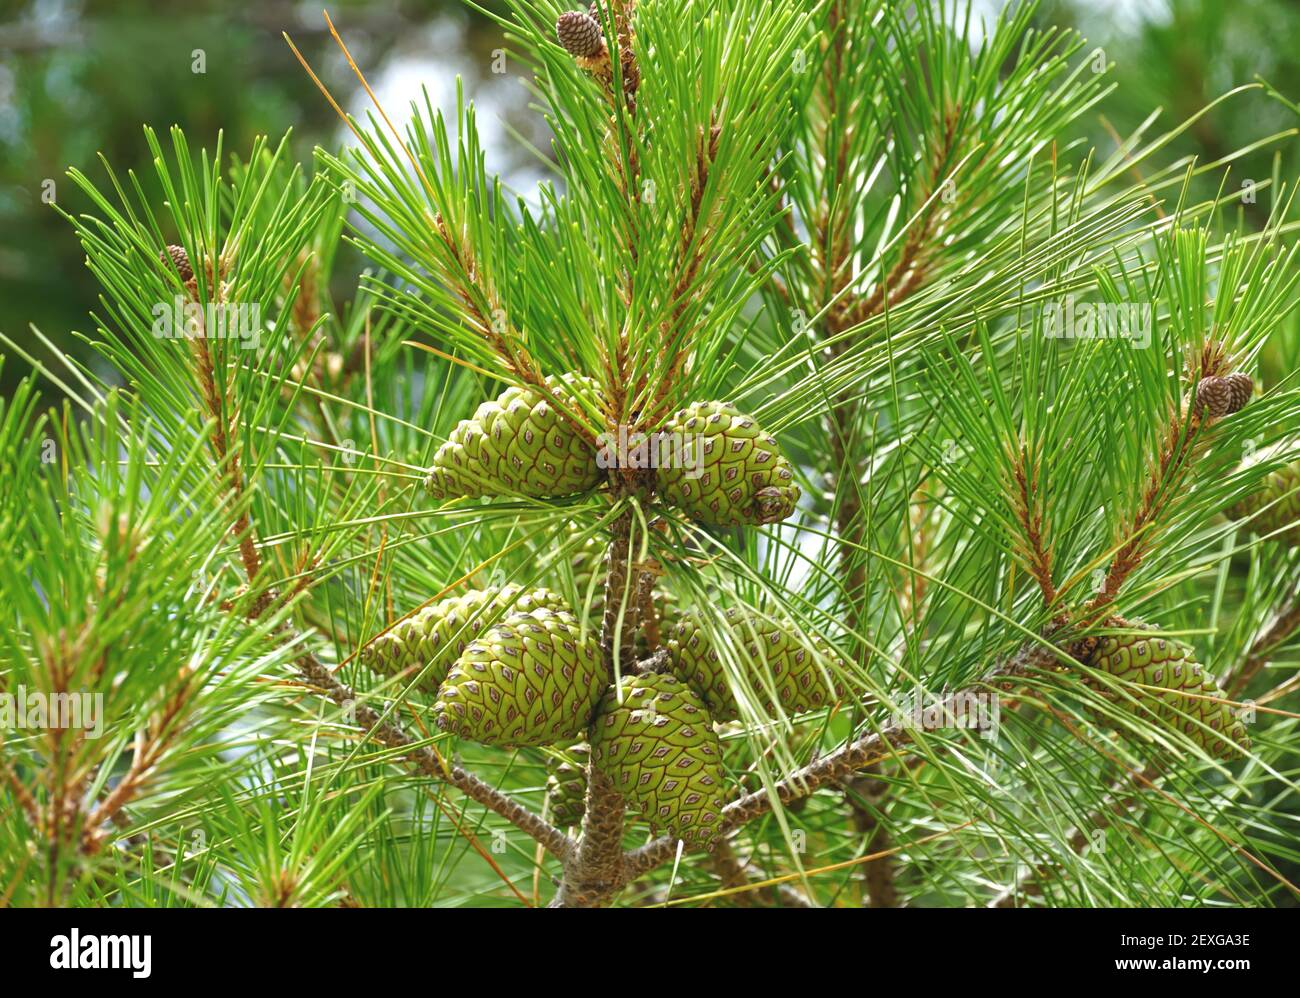 Conos de pino verde en una parte superior de rama de aromático pino perfumado Foto de stock